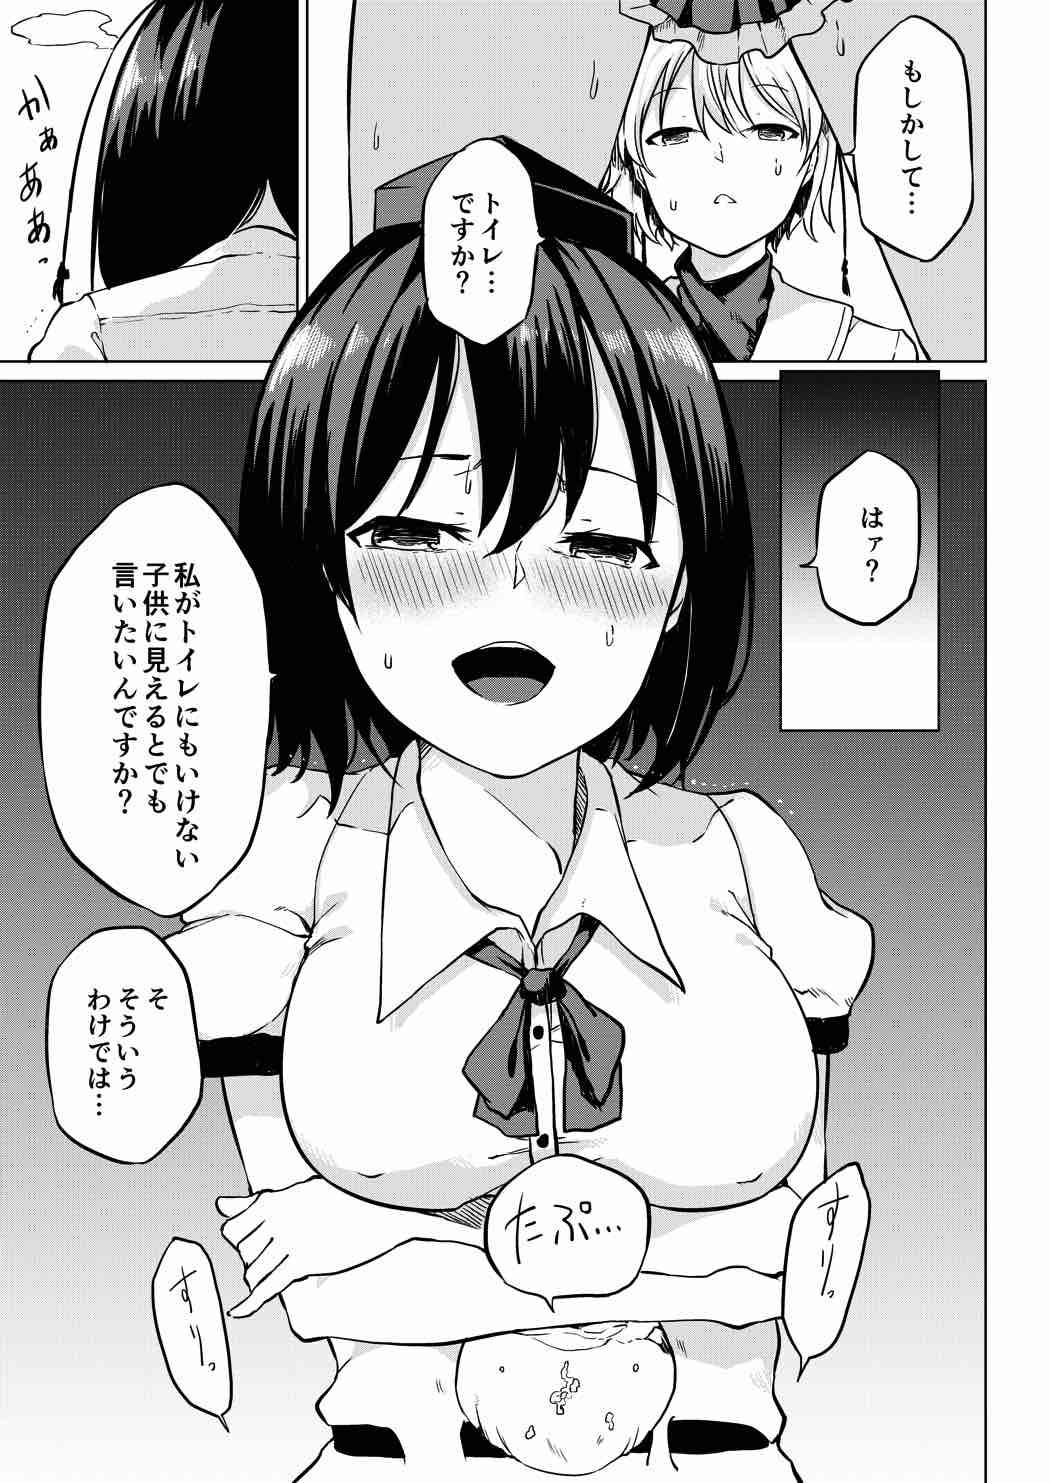 Her Toile ni Ikitai! Aya-san desu ga - Touhou project Chubby - Page 9